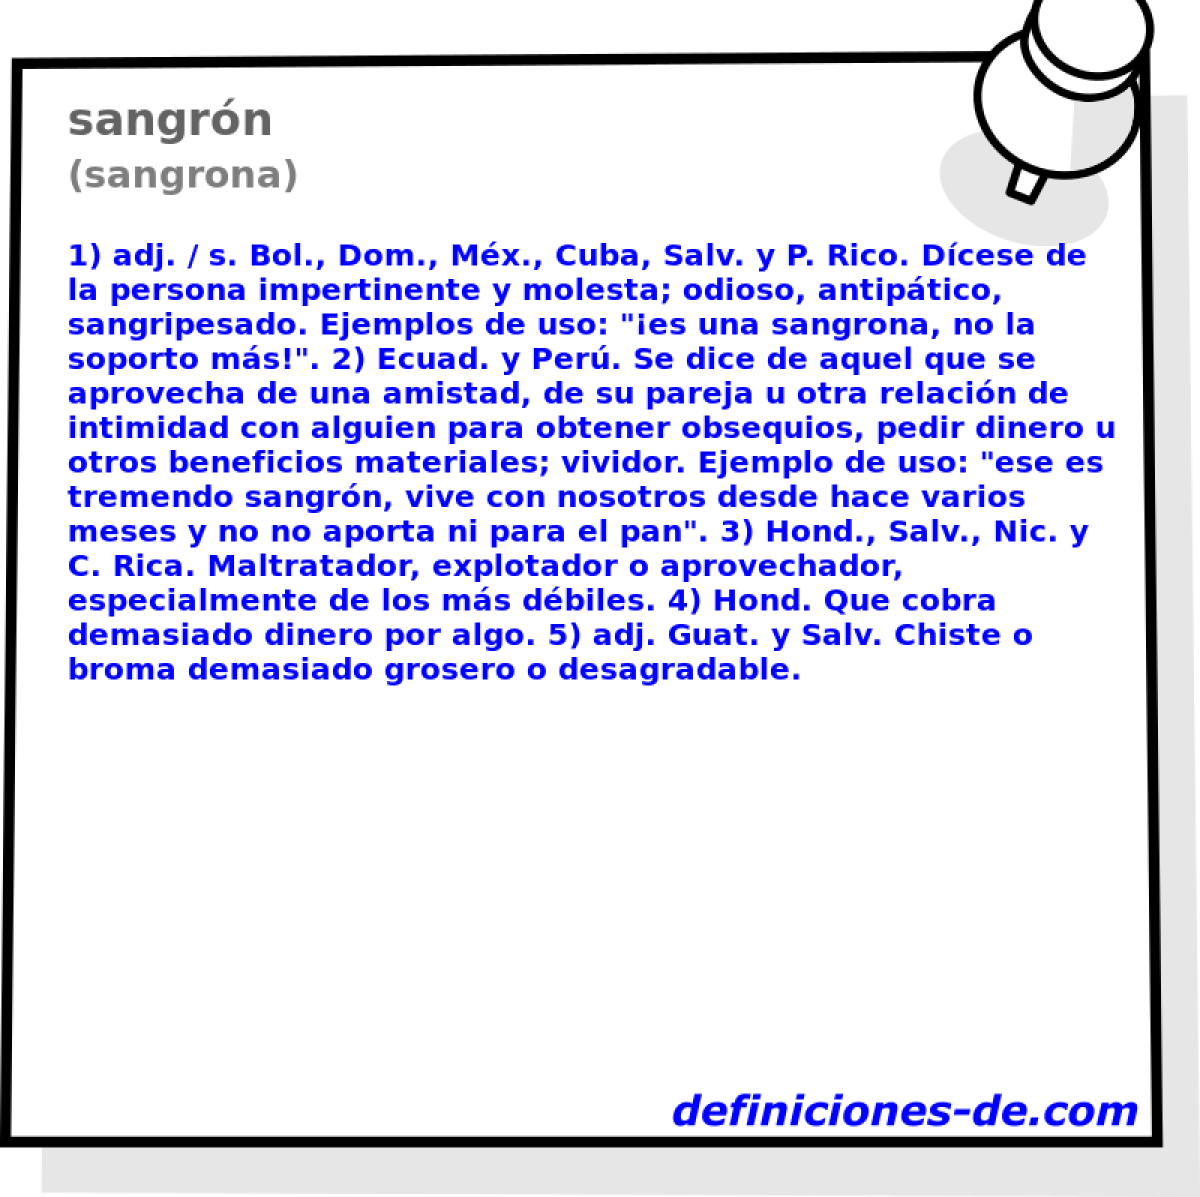 sangrn (sangrona)